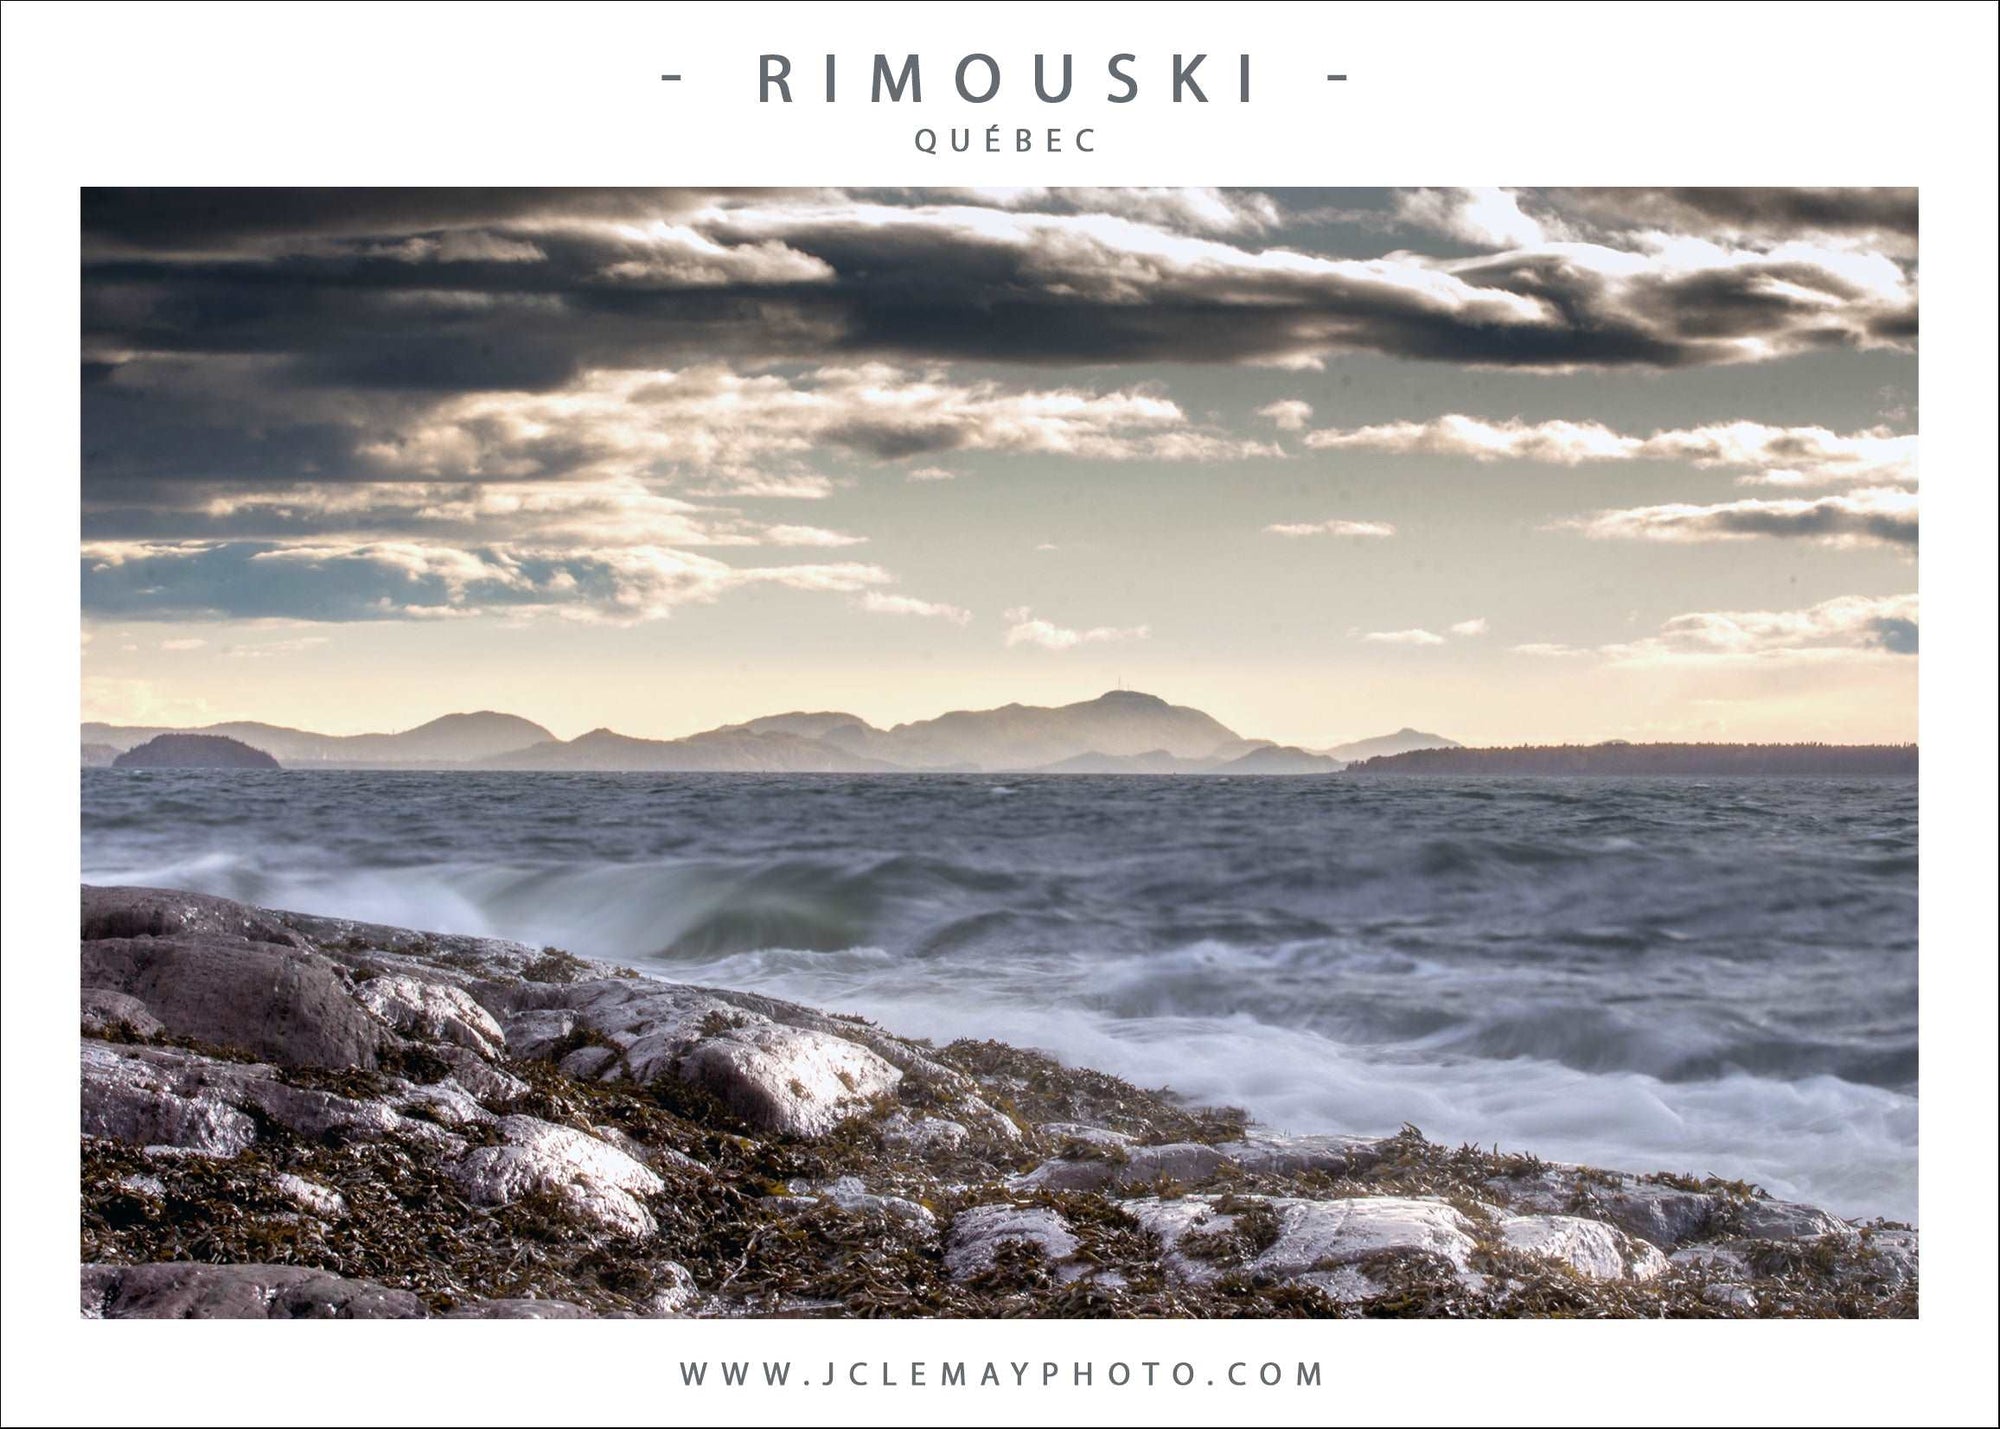 Carte postale d'un paysage de Rimouski par Jc Lemay Photo